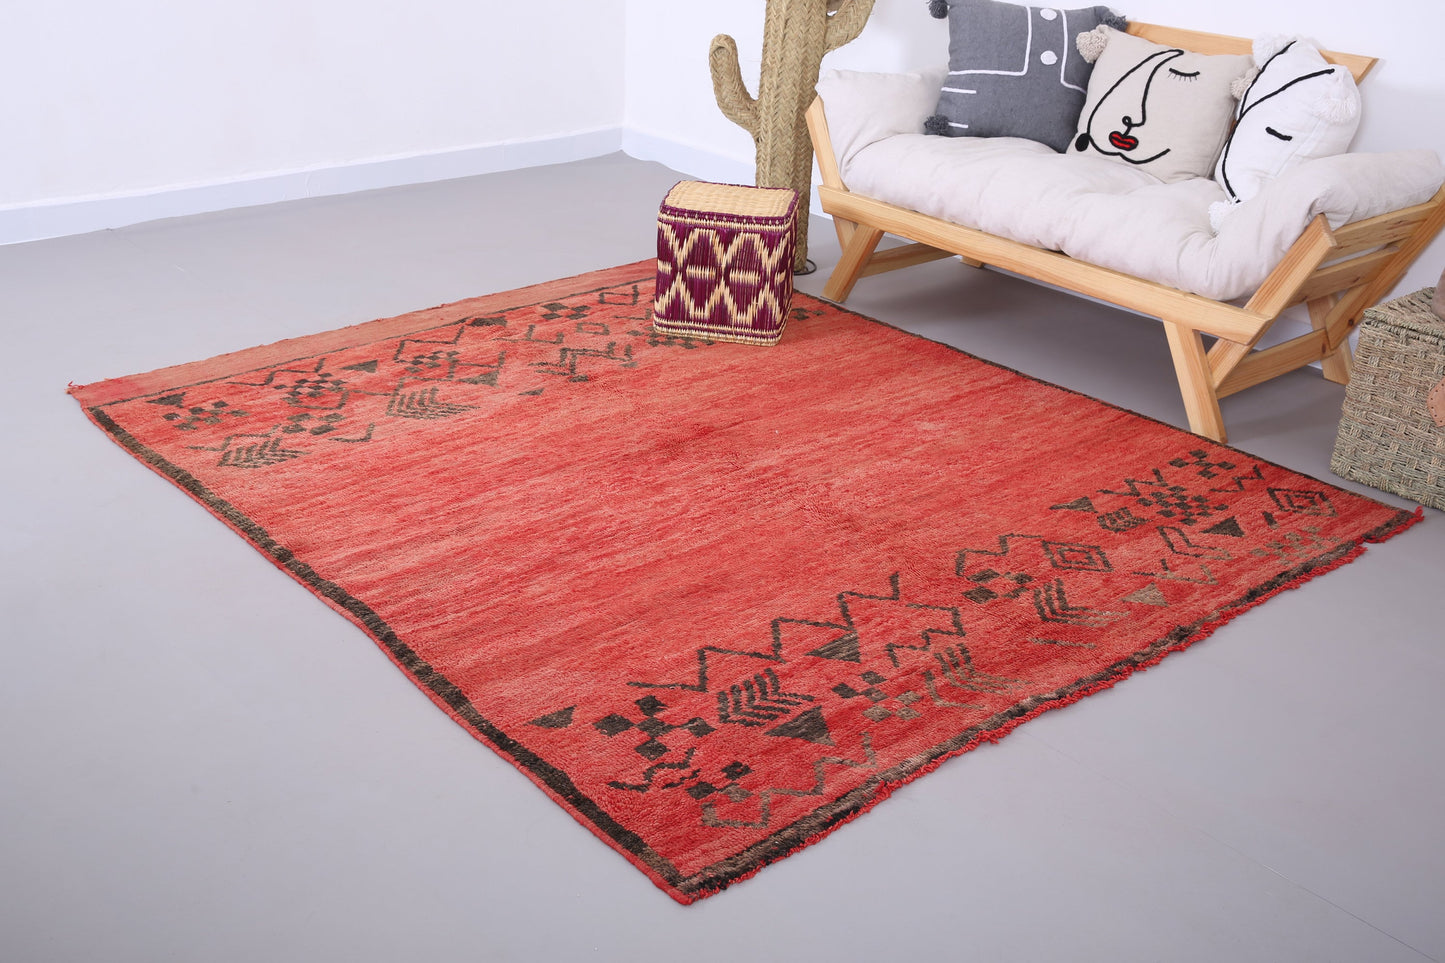 Roter marokkanischer Vintage-Teppich 6,3 FT x 7,4 FT - roter marokkanischer Teppich - Vintage-Tribal-Teppich - handgemachter Berberteppich - einzigartiger Vintage-Teppich - Boho-Teppich